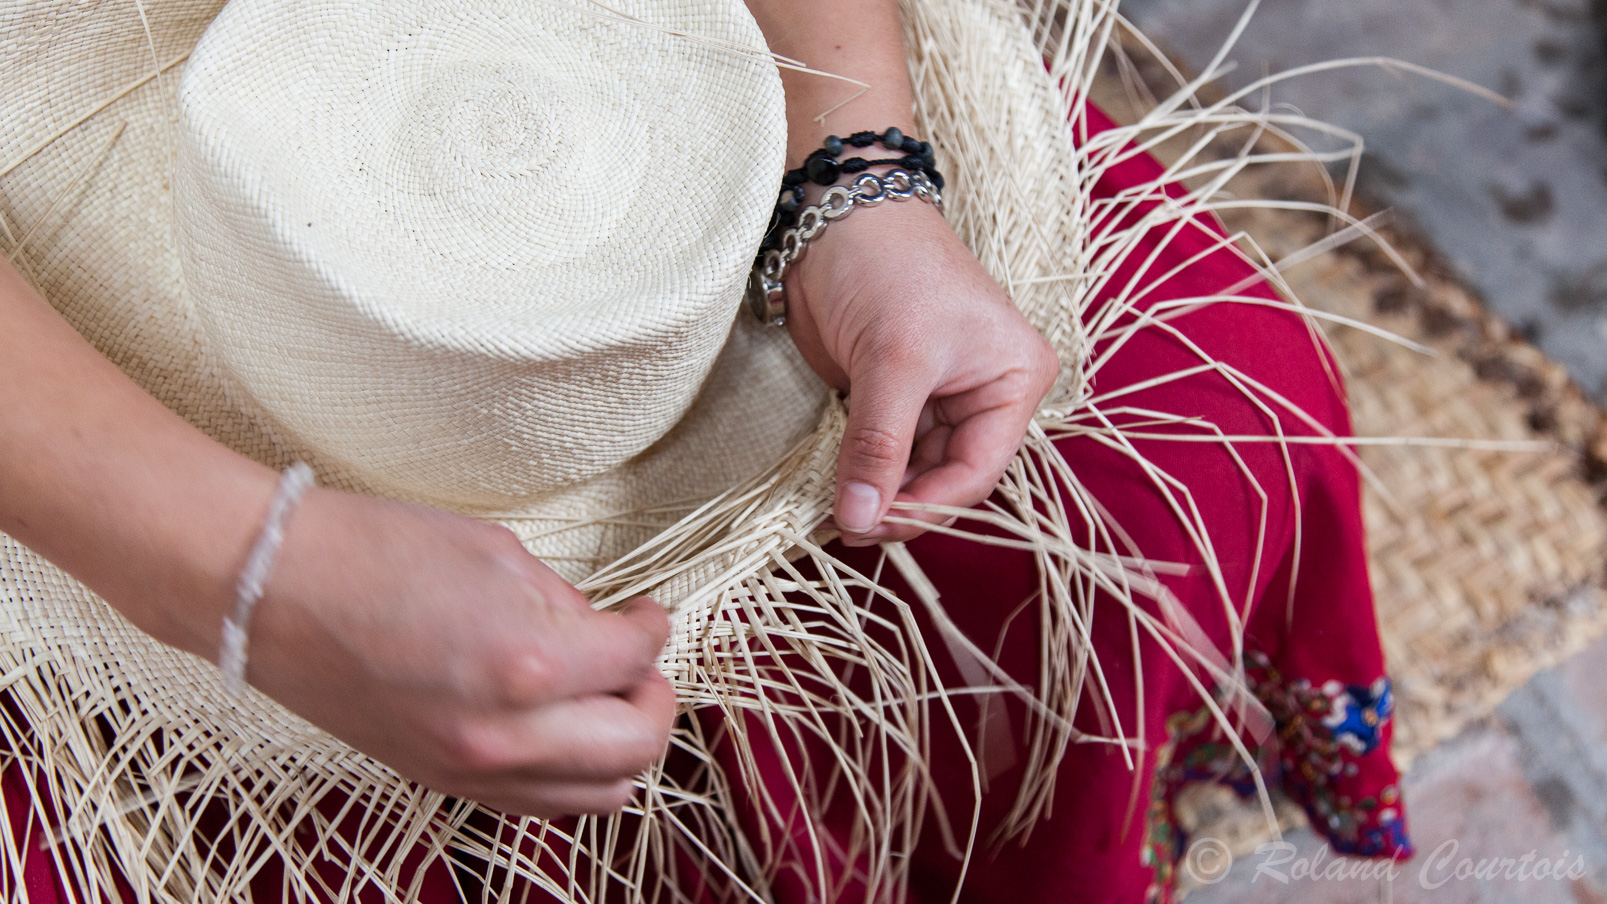 Fabrique de chapeaux de Panama qui comme le nom ne l'indique pas est une production typique de l'Equateur.